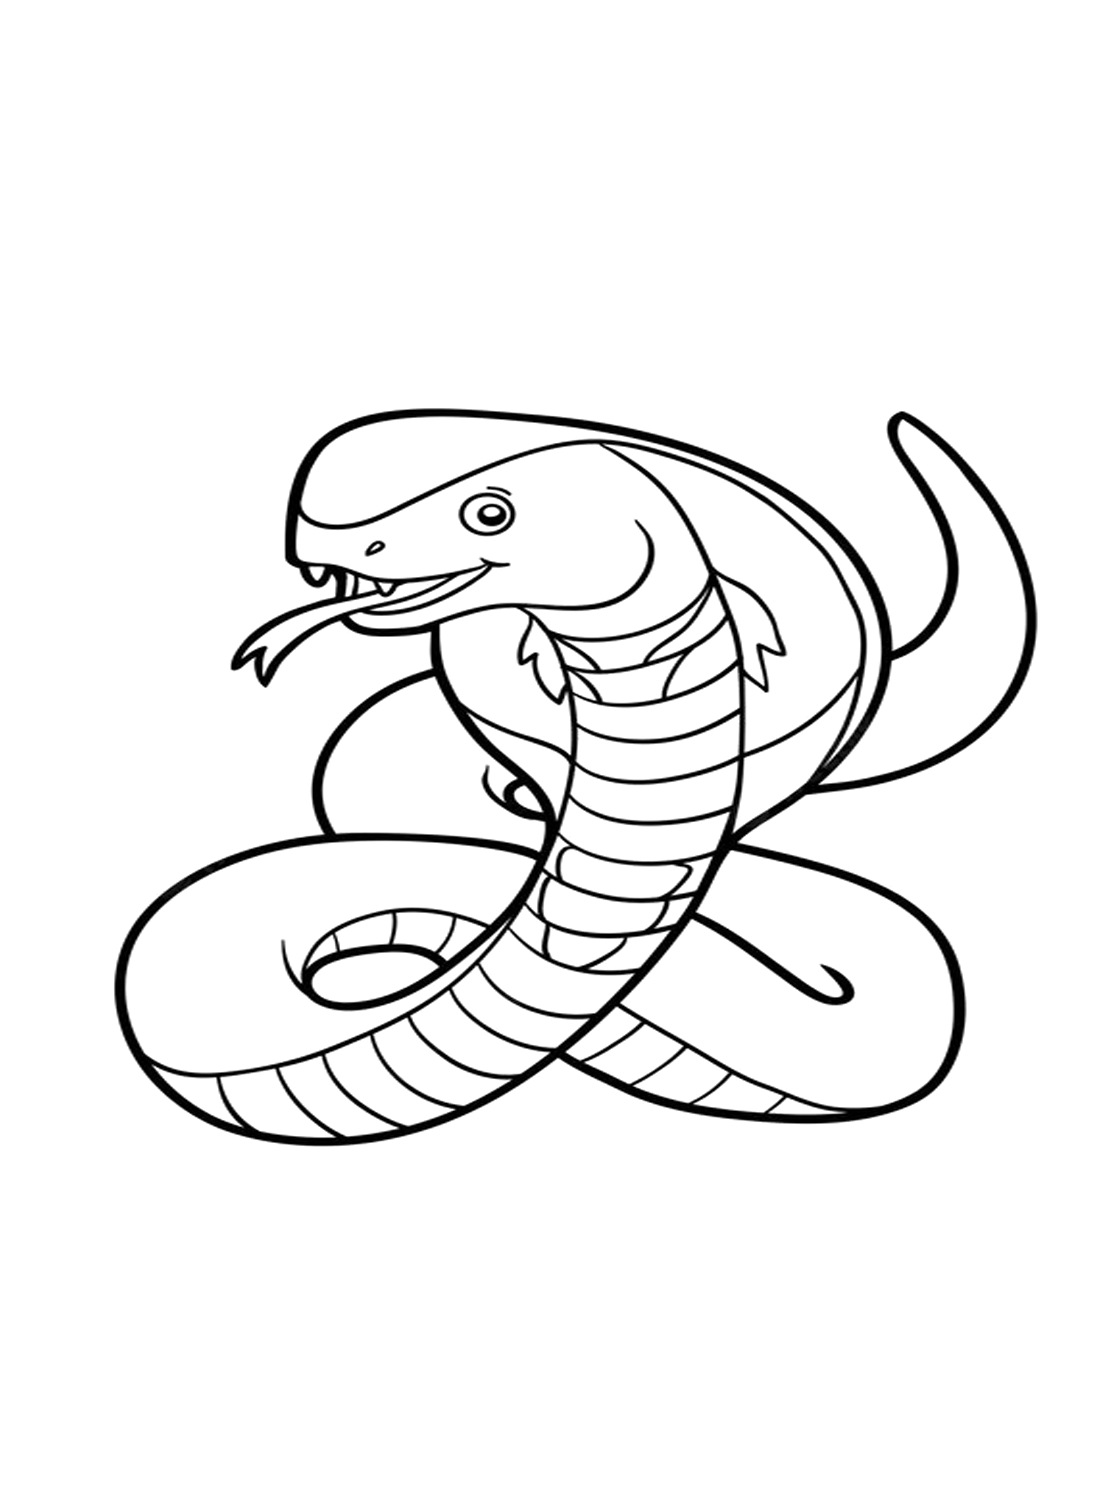 Uma cobra de Cobra